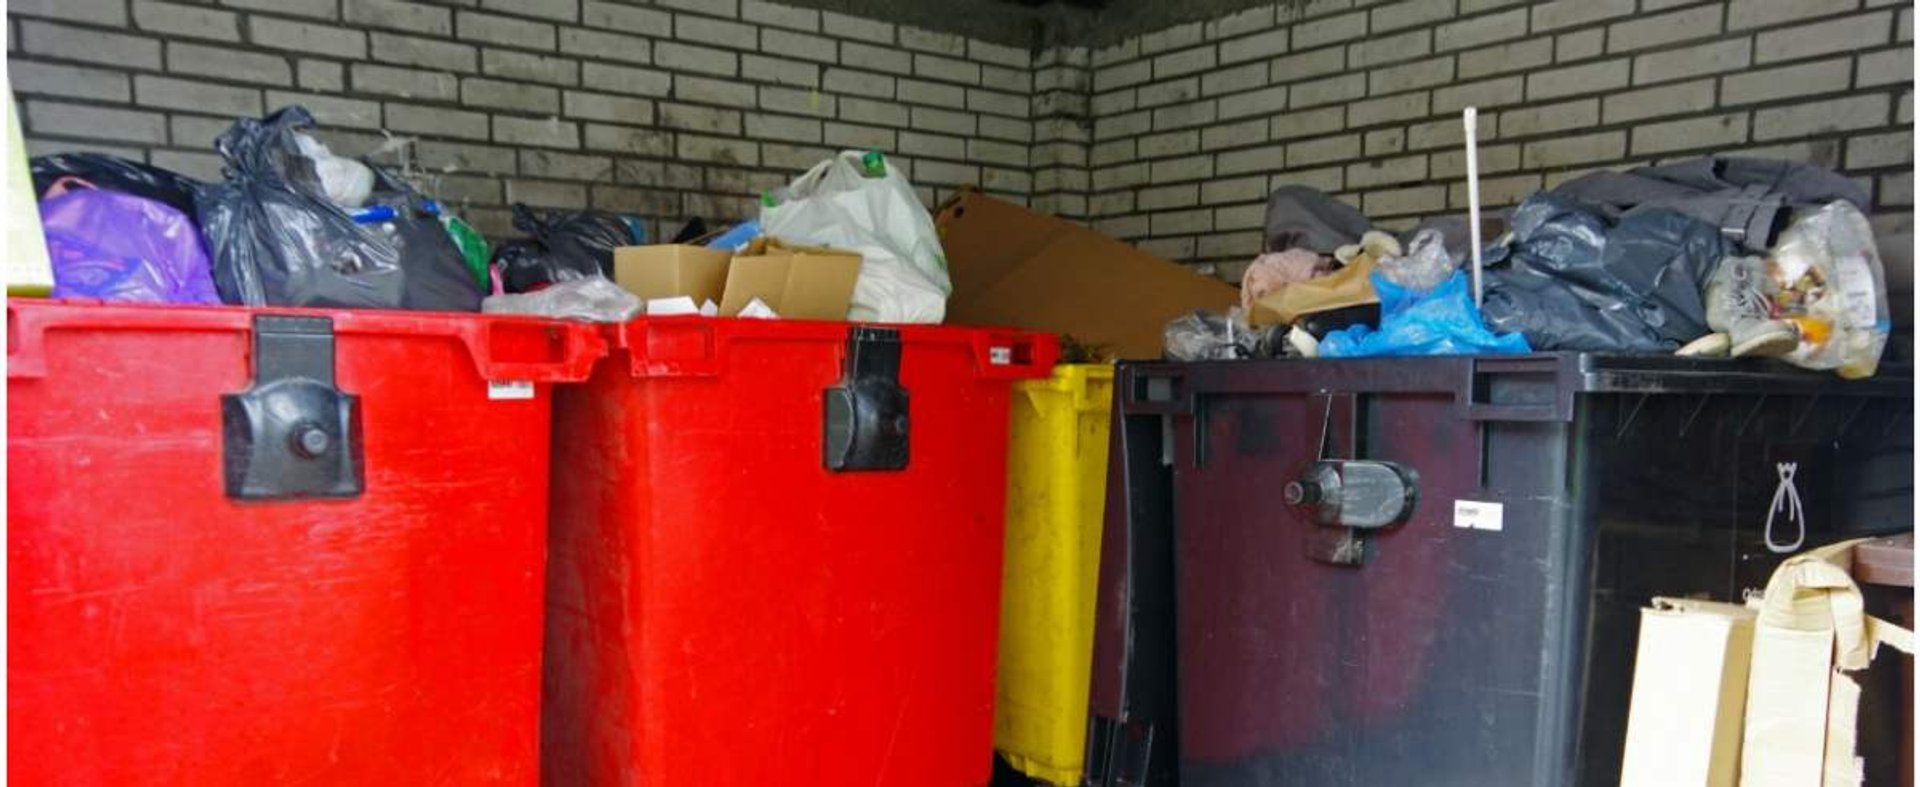 PHOTO: ZOFIA I MAREK BAZAK / EAST NEWS Warszawa N/Z Osiedlowy smietnik, segregacja odpadow, pojemniki do segregacji smieci, podwyzka oplat, nowe stawki za odpady od grudnia 2020.